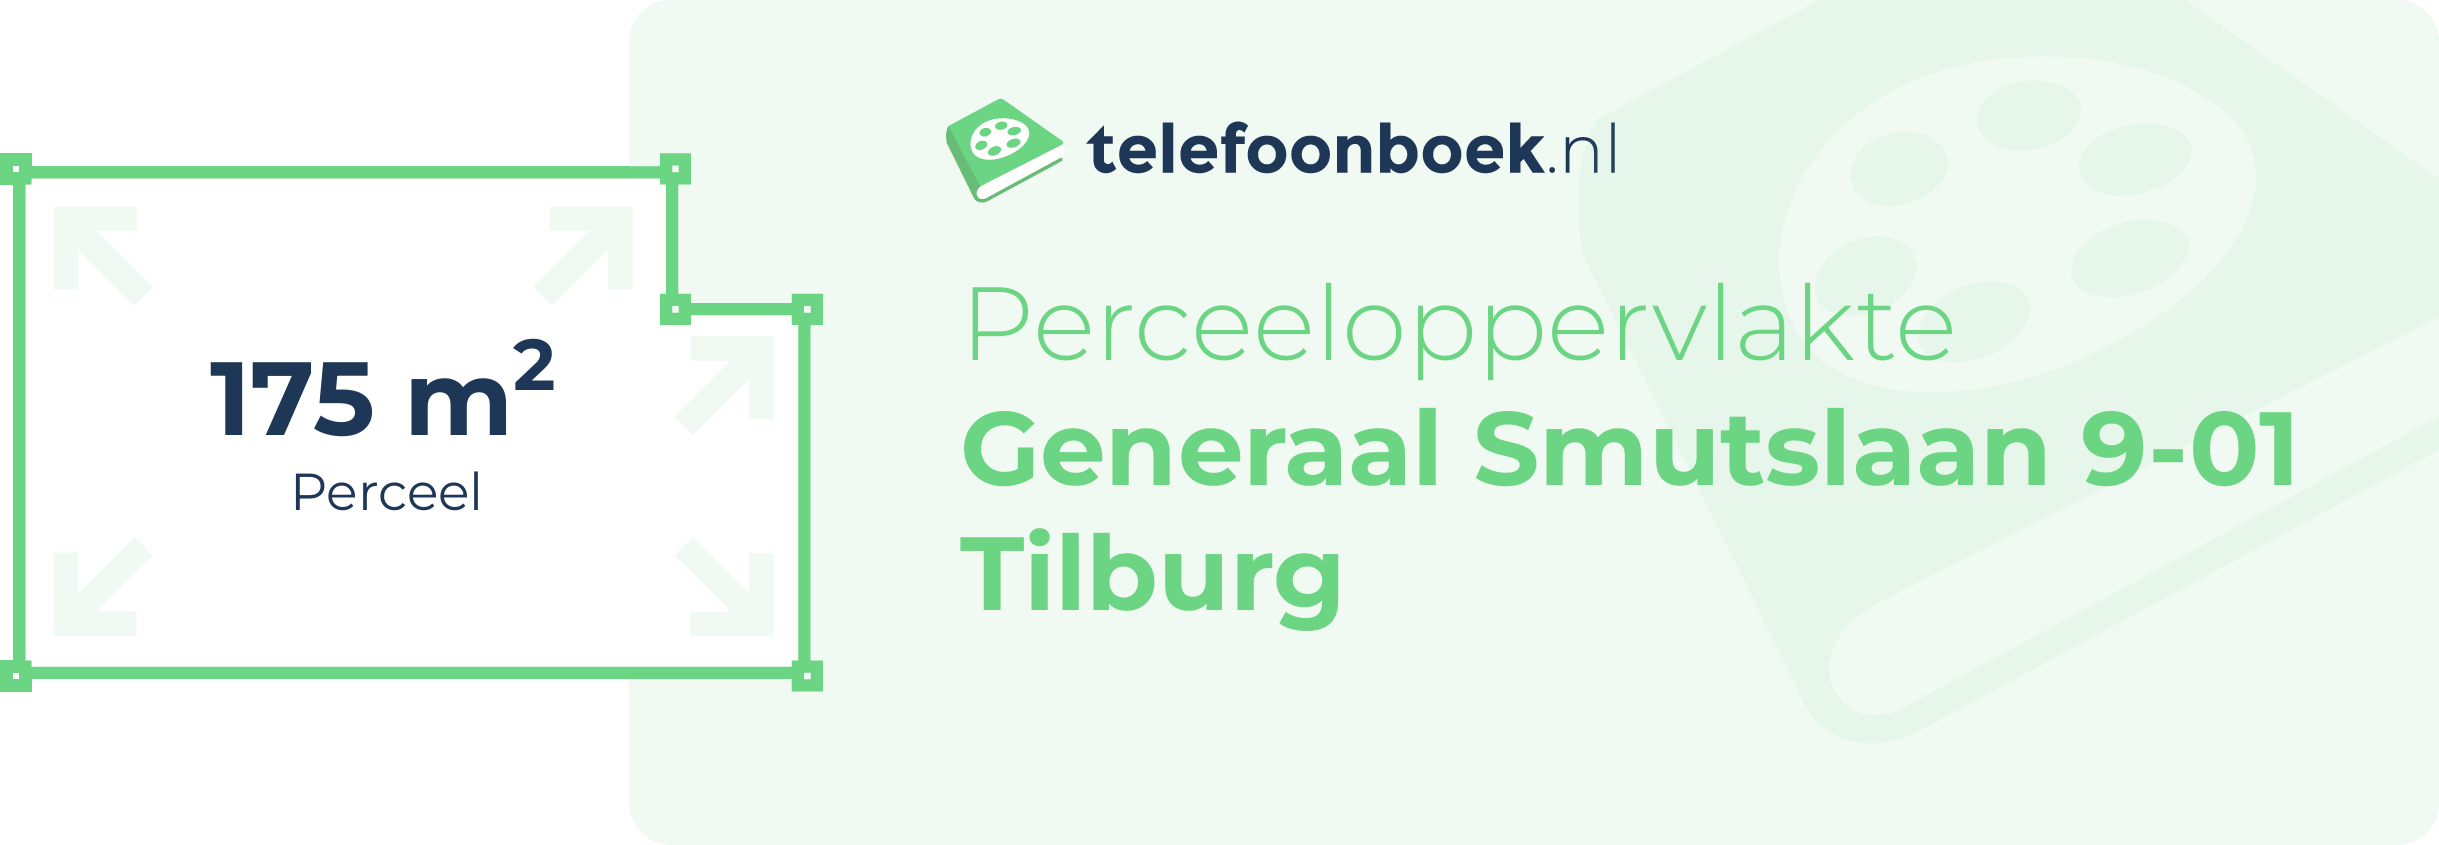 Perceeloppervlakte Generaal Smutslaan 9-01 Tilburg